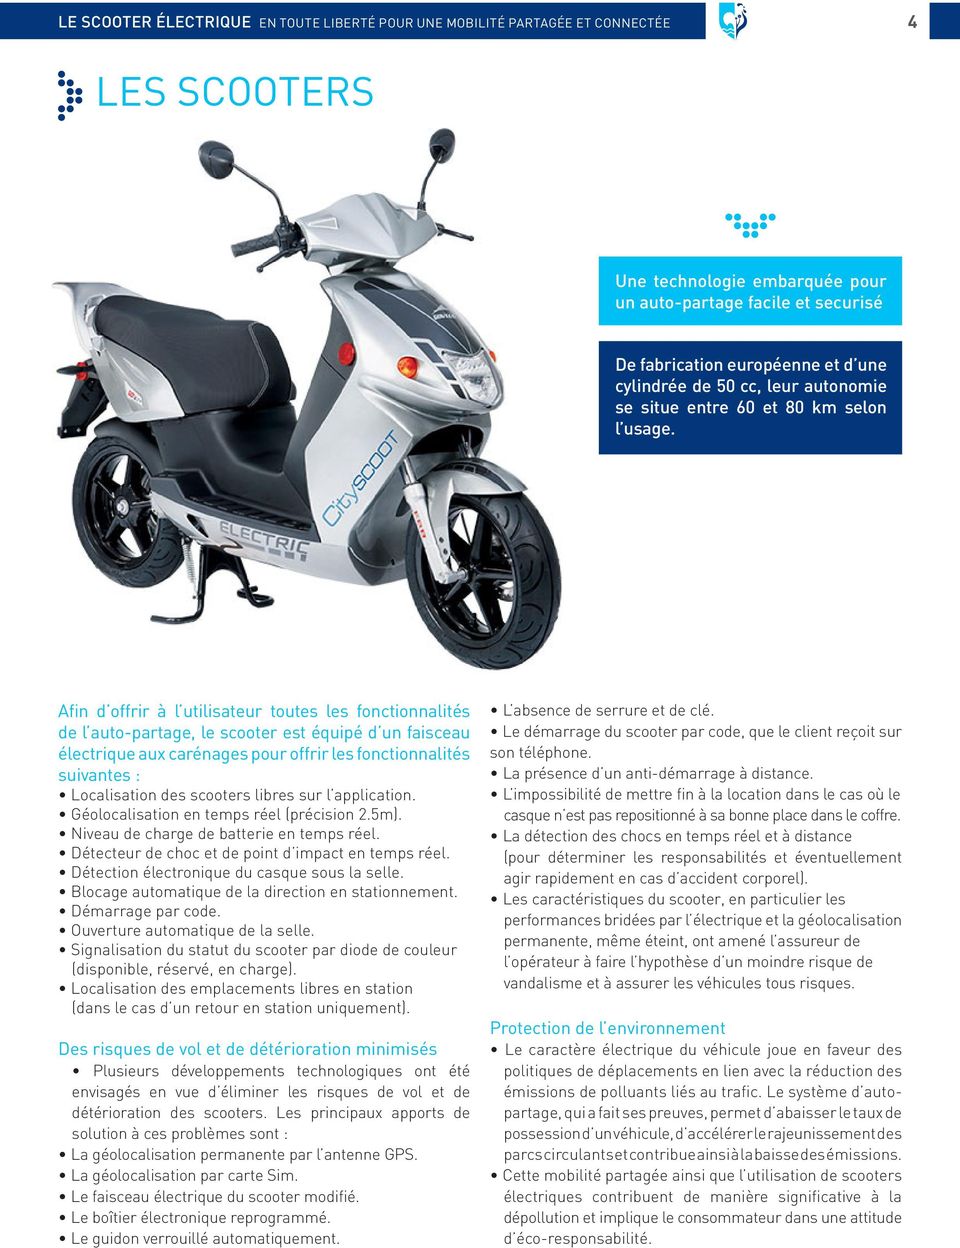 Afin d offrir à l utilisateur toutes les fonctionnalités de l auto-partage, le scooter est équipé d un faisceau électrique aux carénages pour offrir les fonctionnalités suivantes : Localisation des